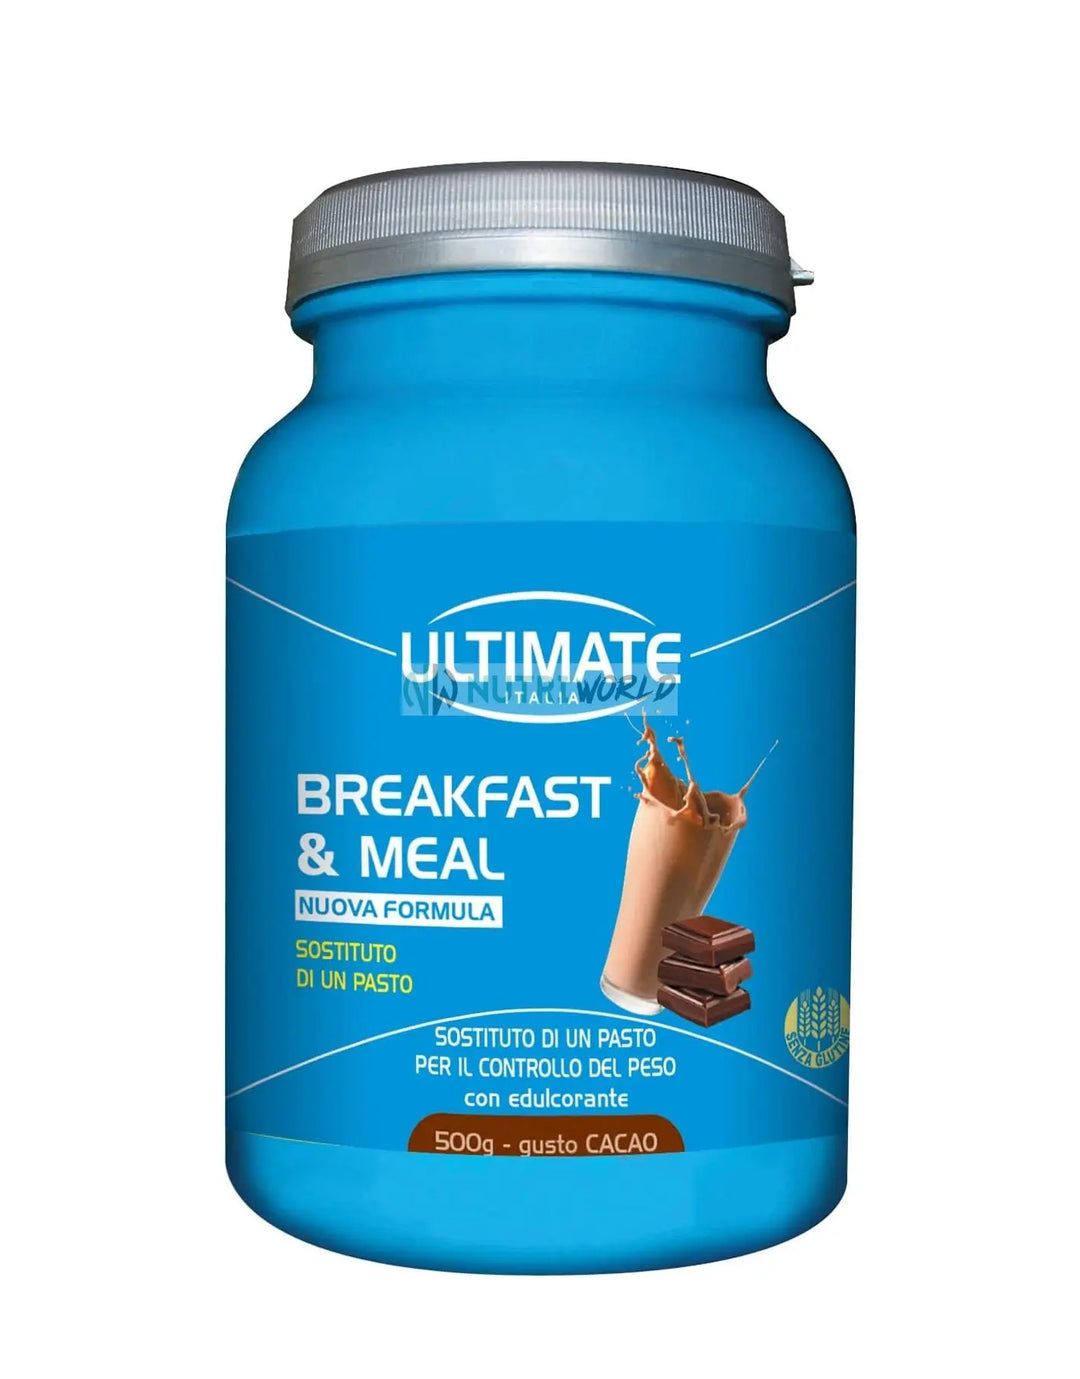 Ultimate Breakfast e Meal 500g Cioccolato Cacao Sostitutivo per Colazione e Pasto per Gestione del Peso